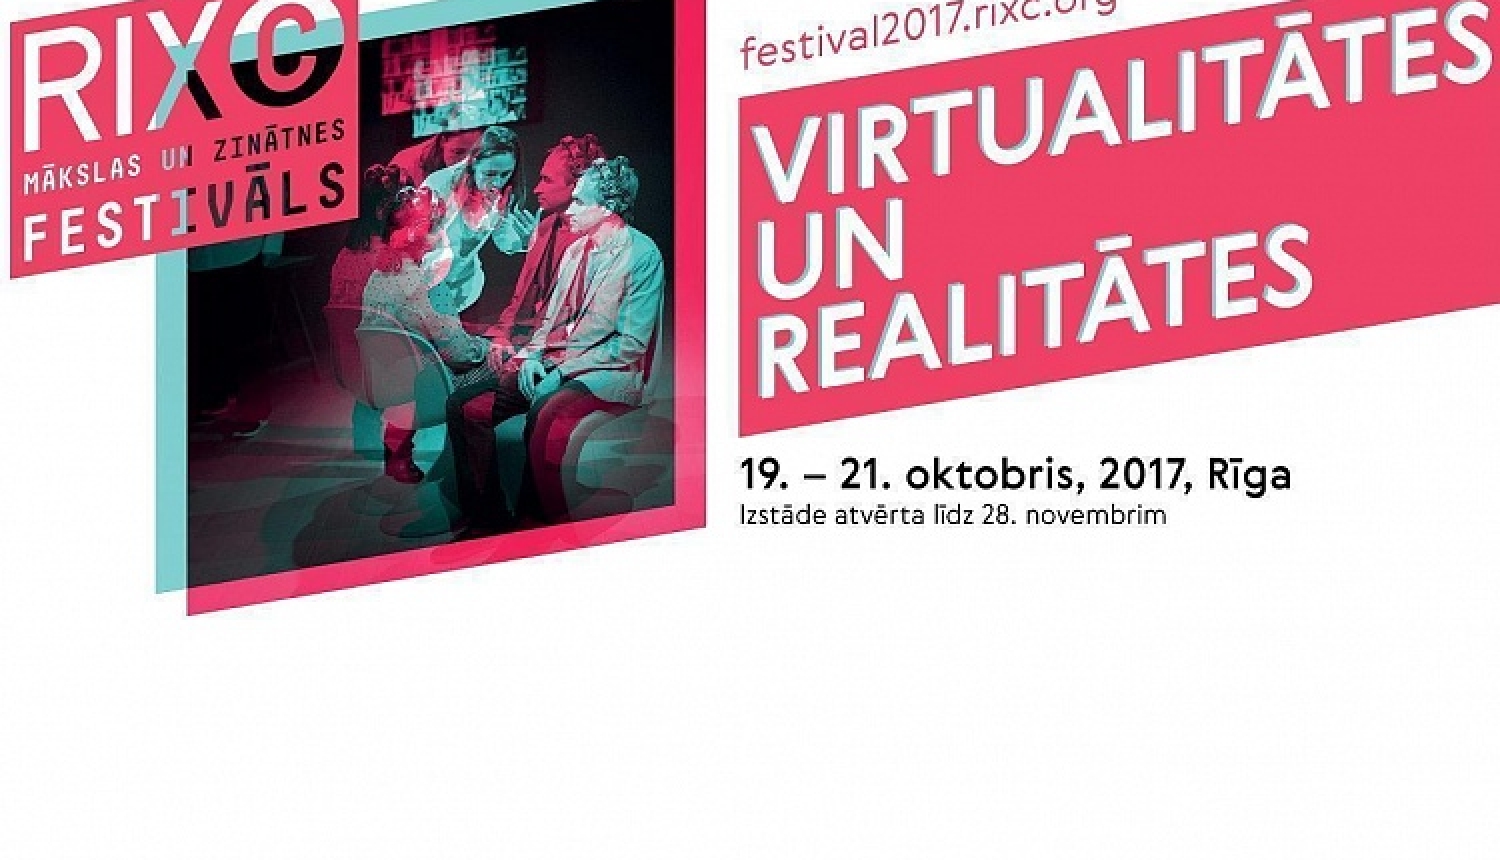 Virtualitātes un realitātes tuvojas - 19. oktobrī atklās RIXC Mākslas un zinātnes festivālu